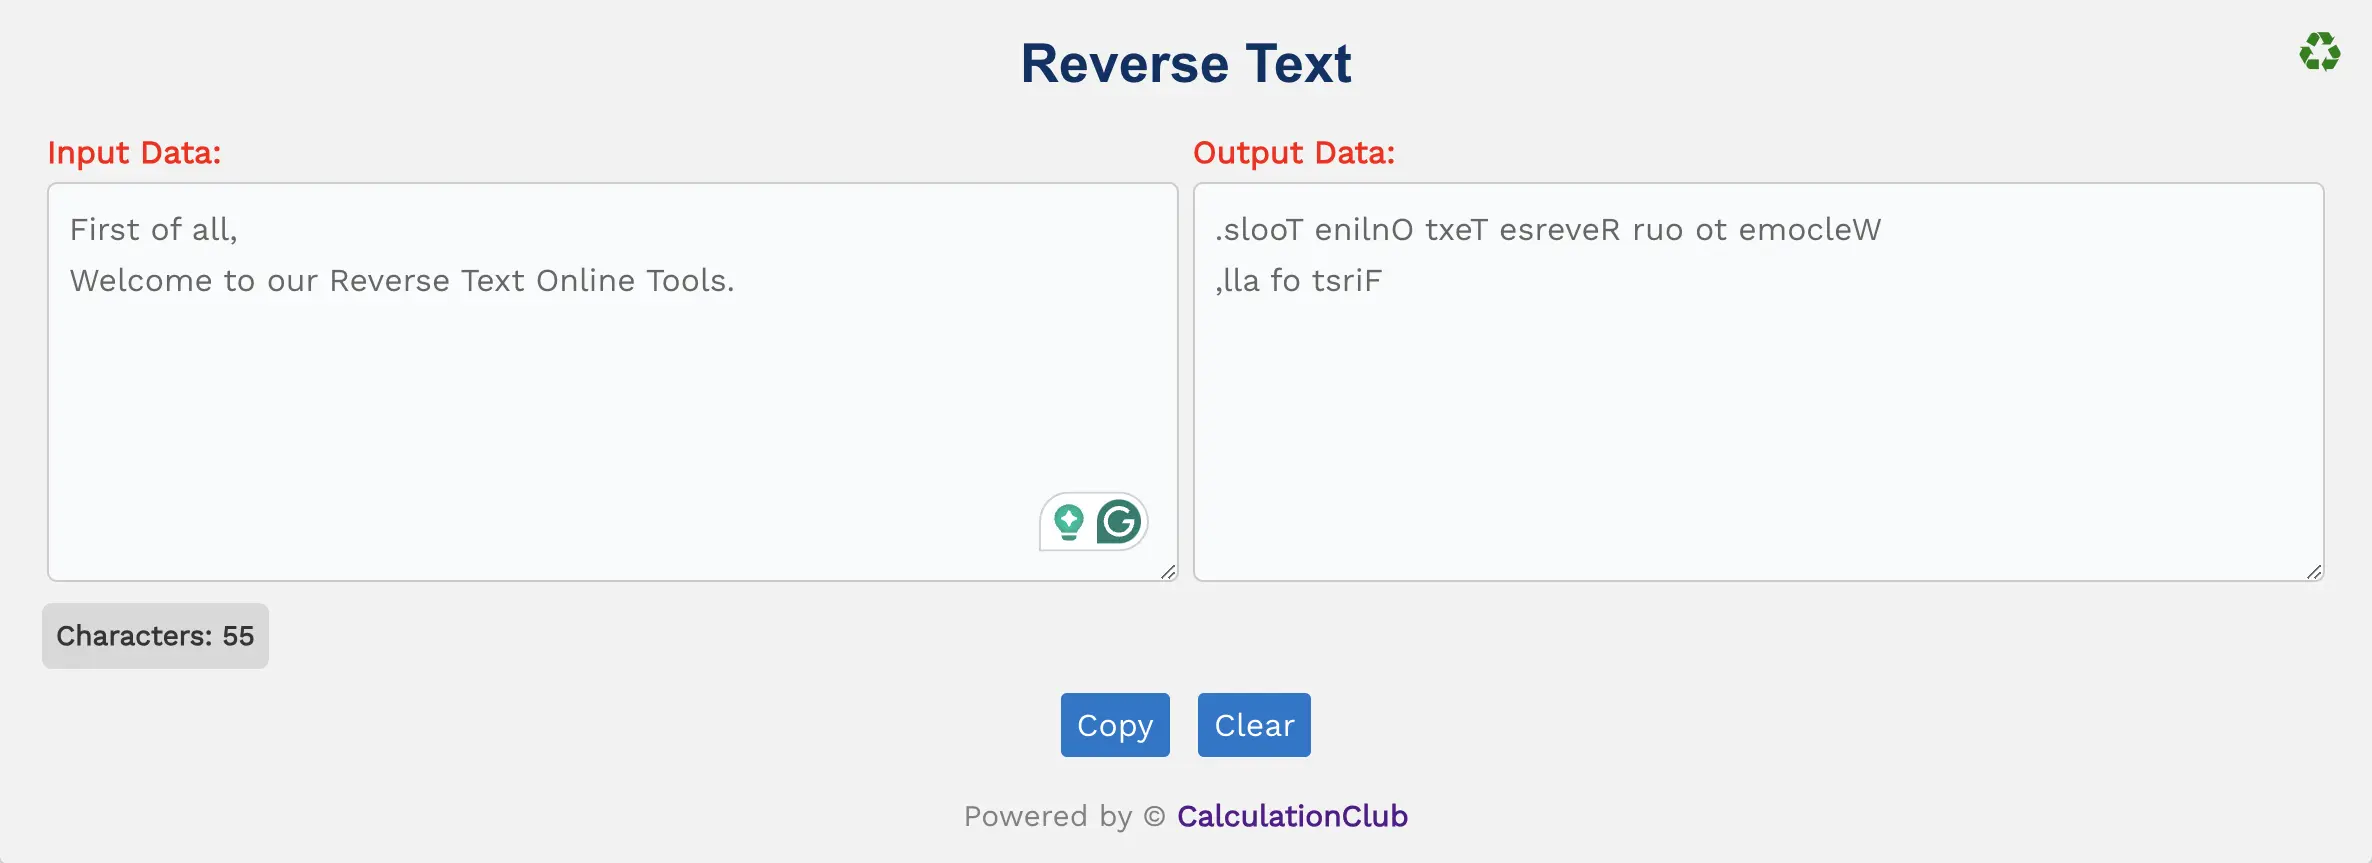 Reverse Text Online Tools | CalculationClub